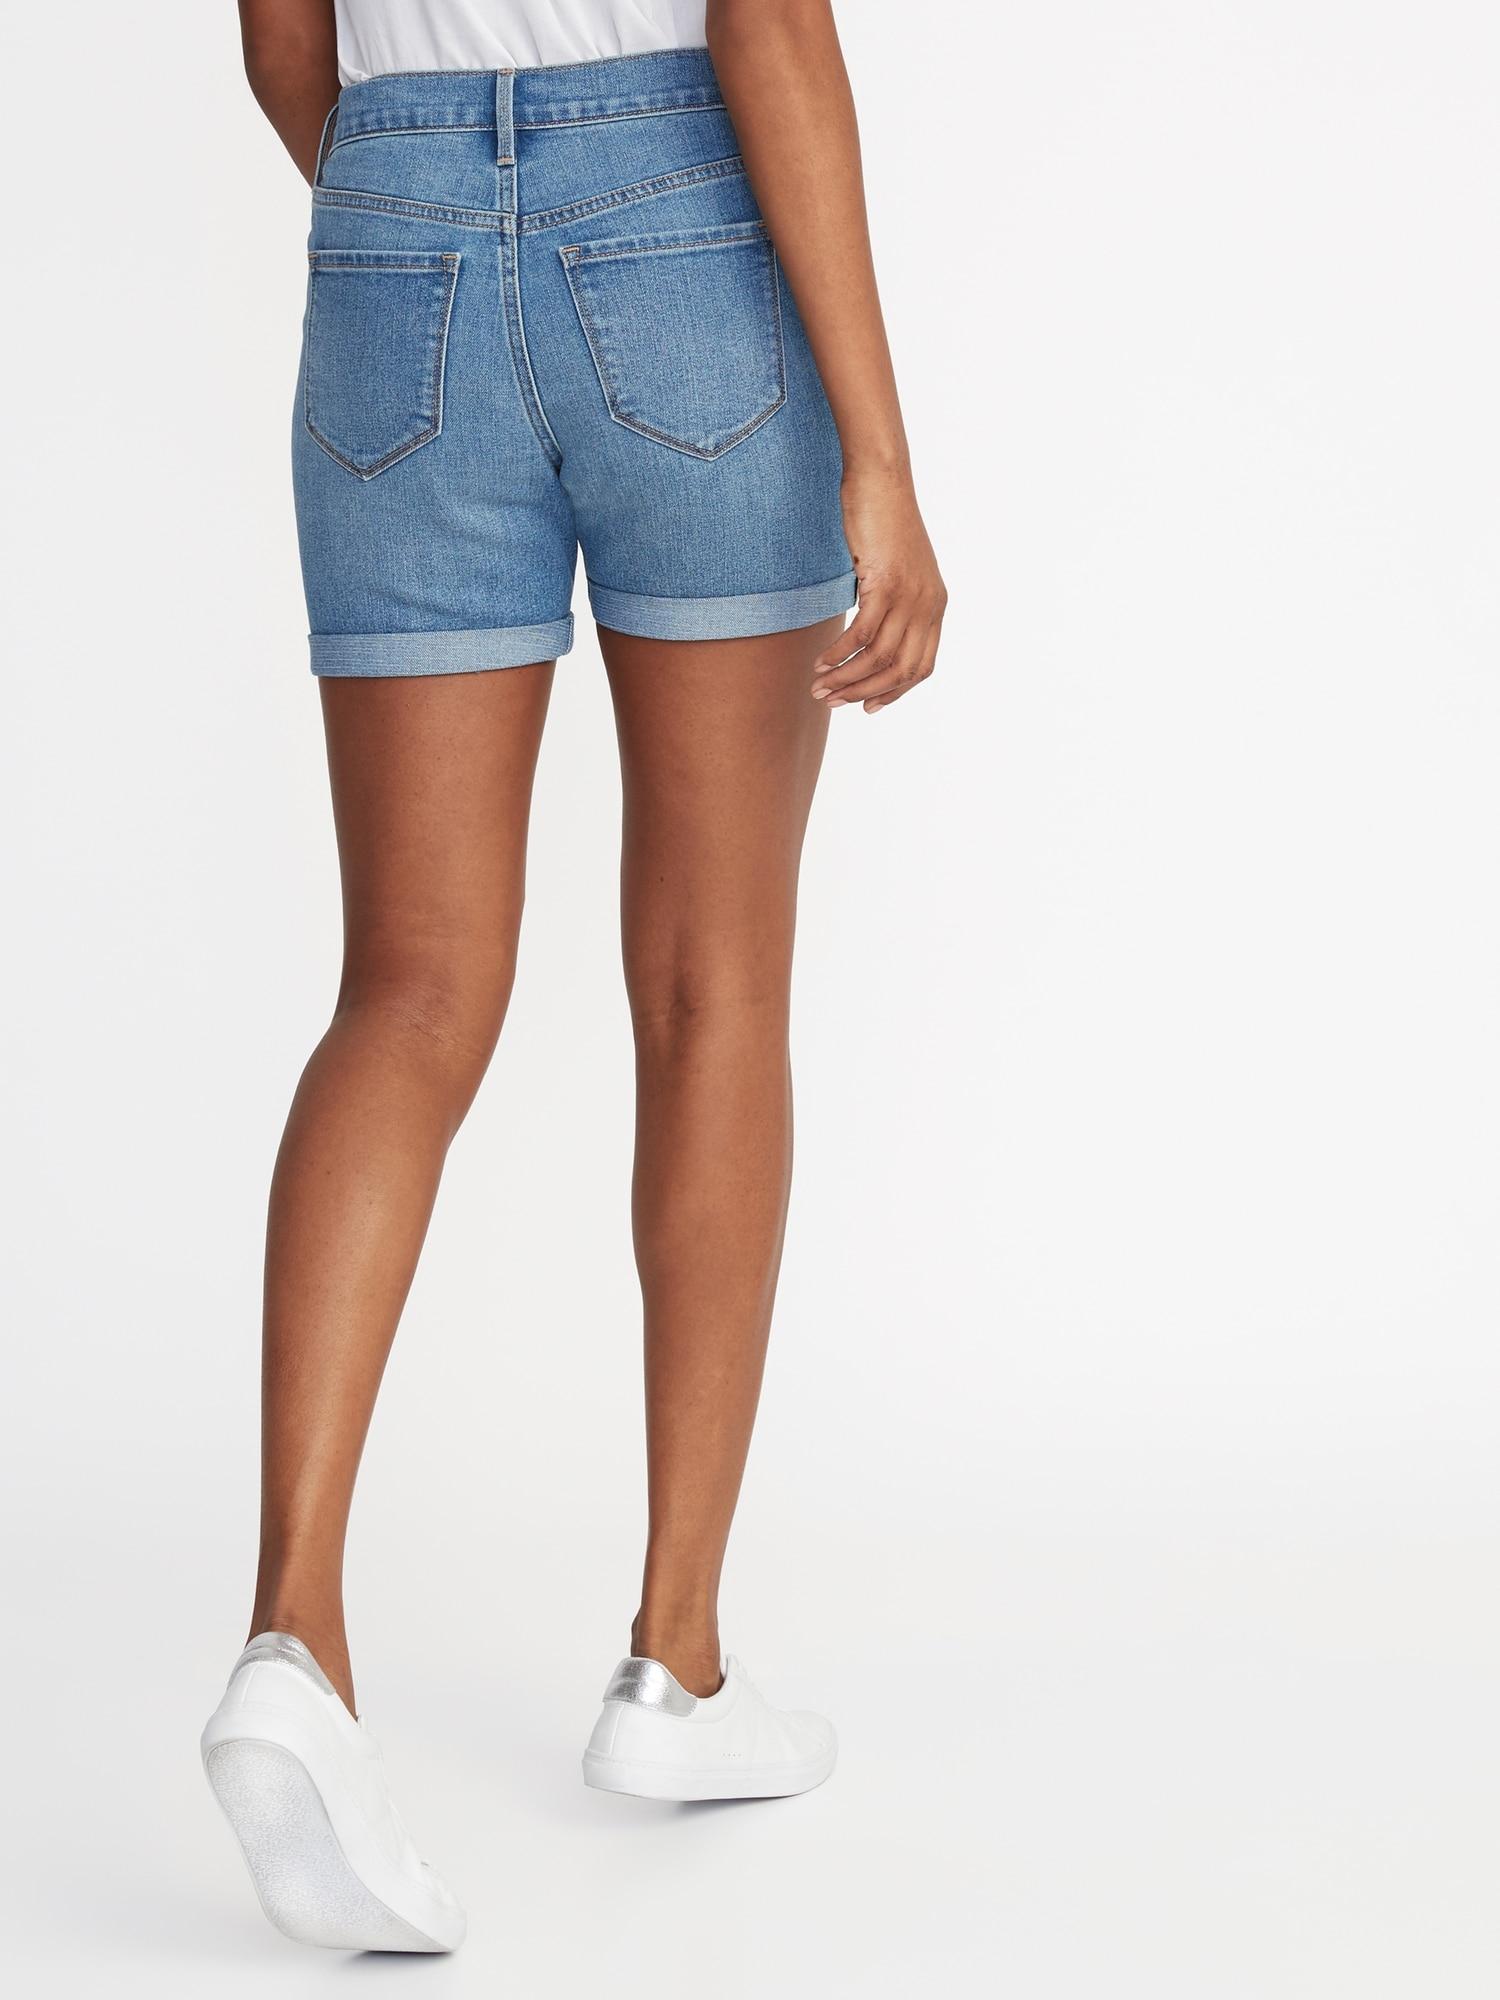 5 inch jean shorts